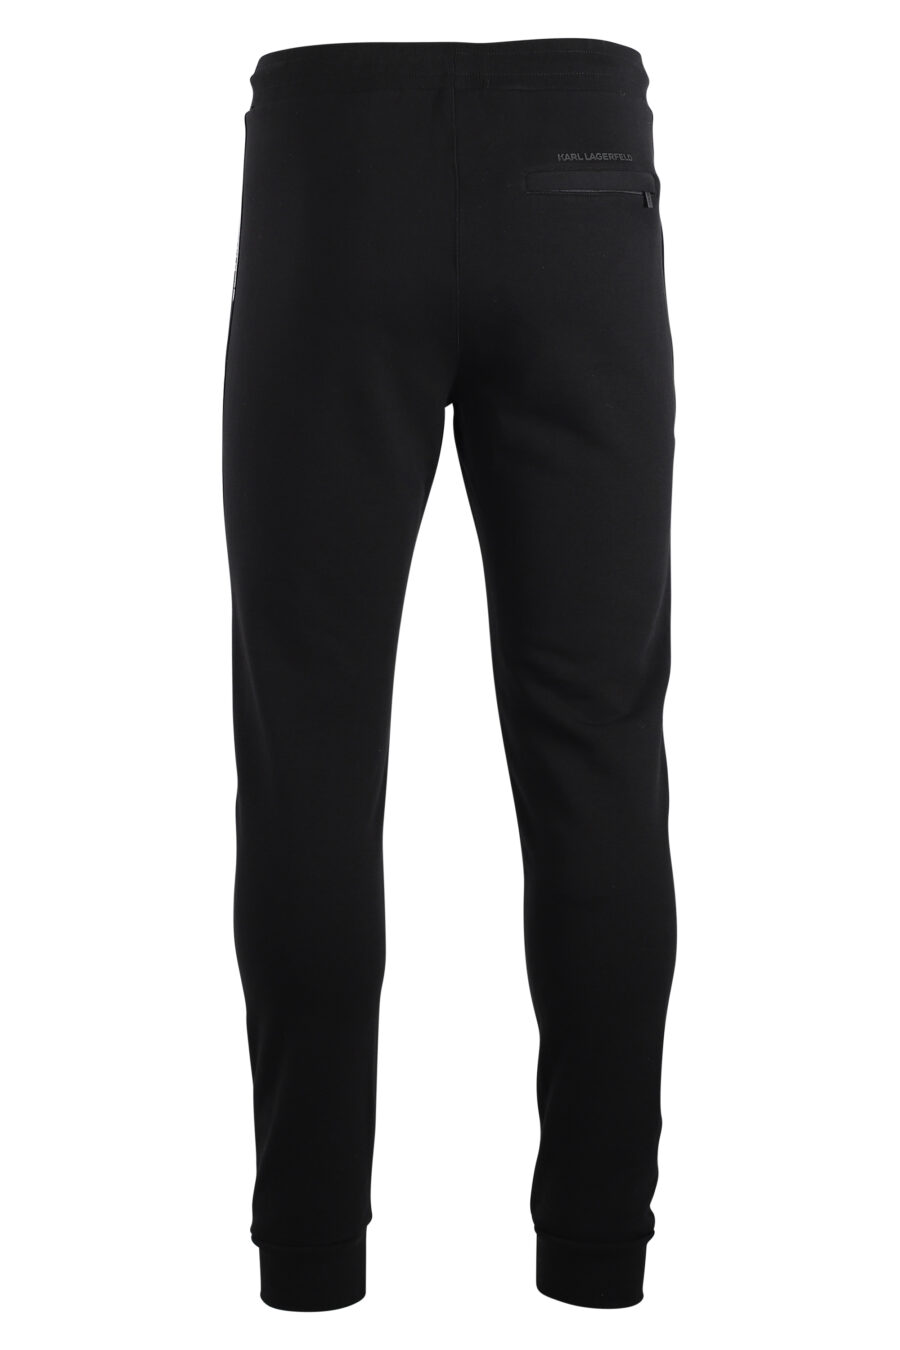 Pantalón de chandal negro con logo silueta pequeño - IMG 7500